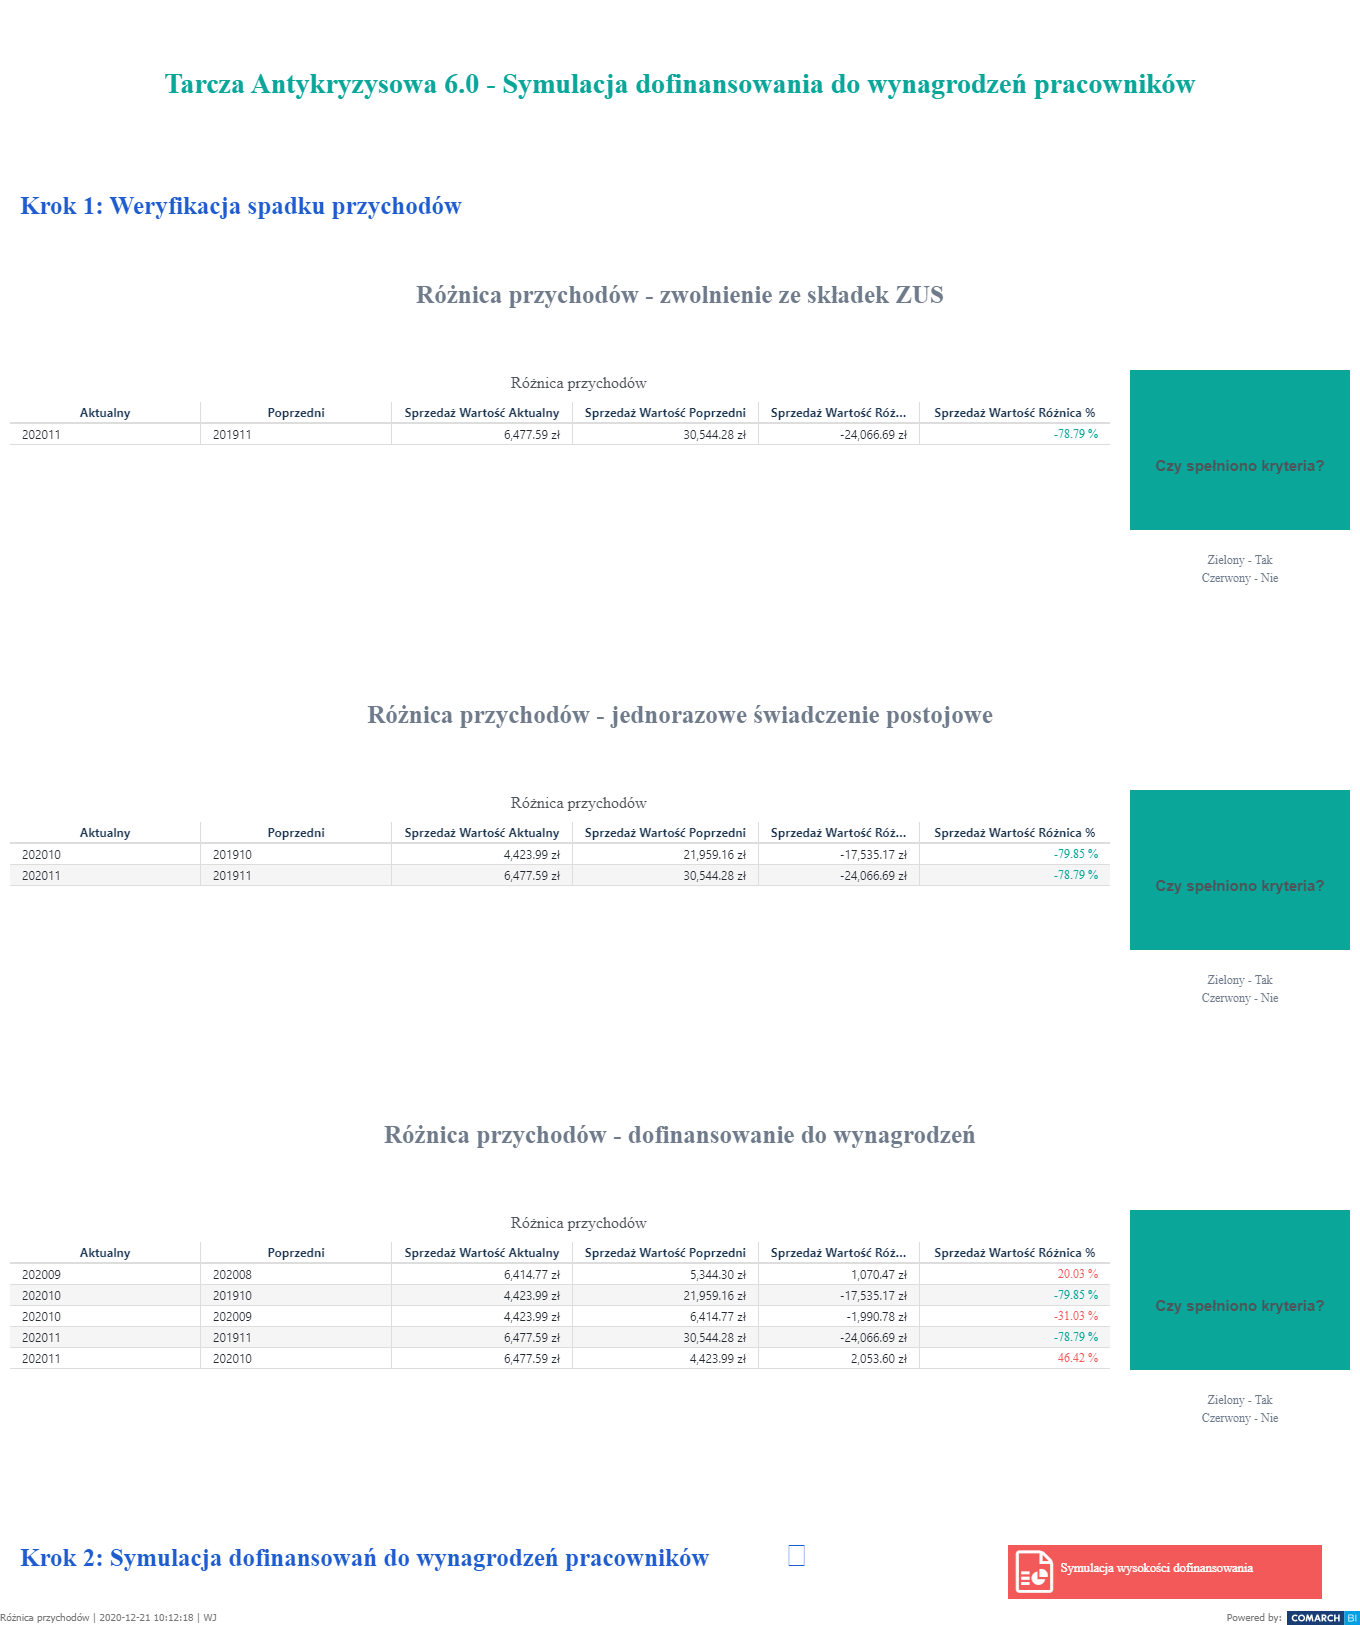 Symulacja dofinansowania do wynagrodzeń i weryfikacja spadku przychodów - Tarcza 6.0 w Comarch BI